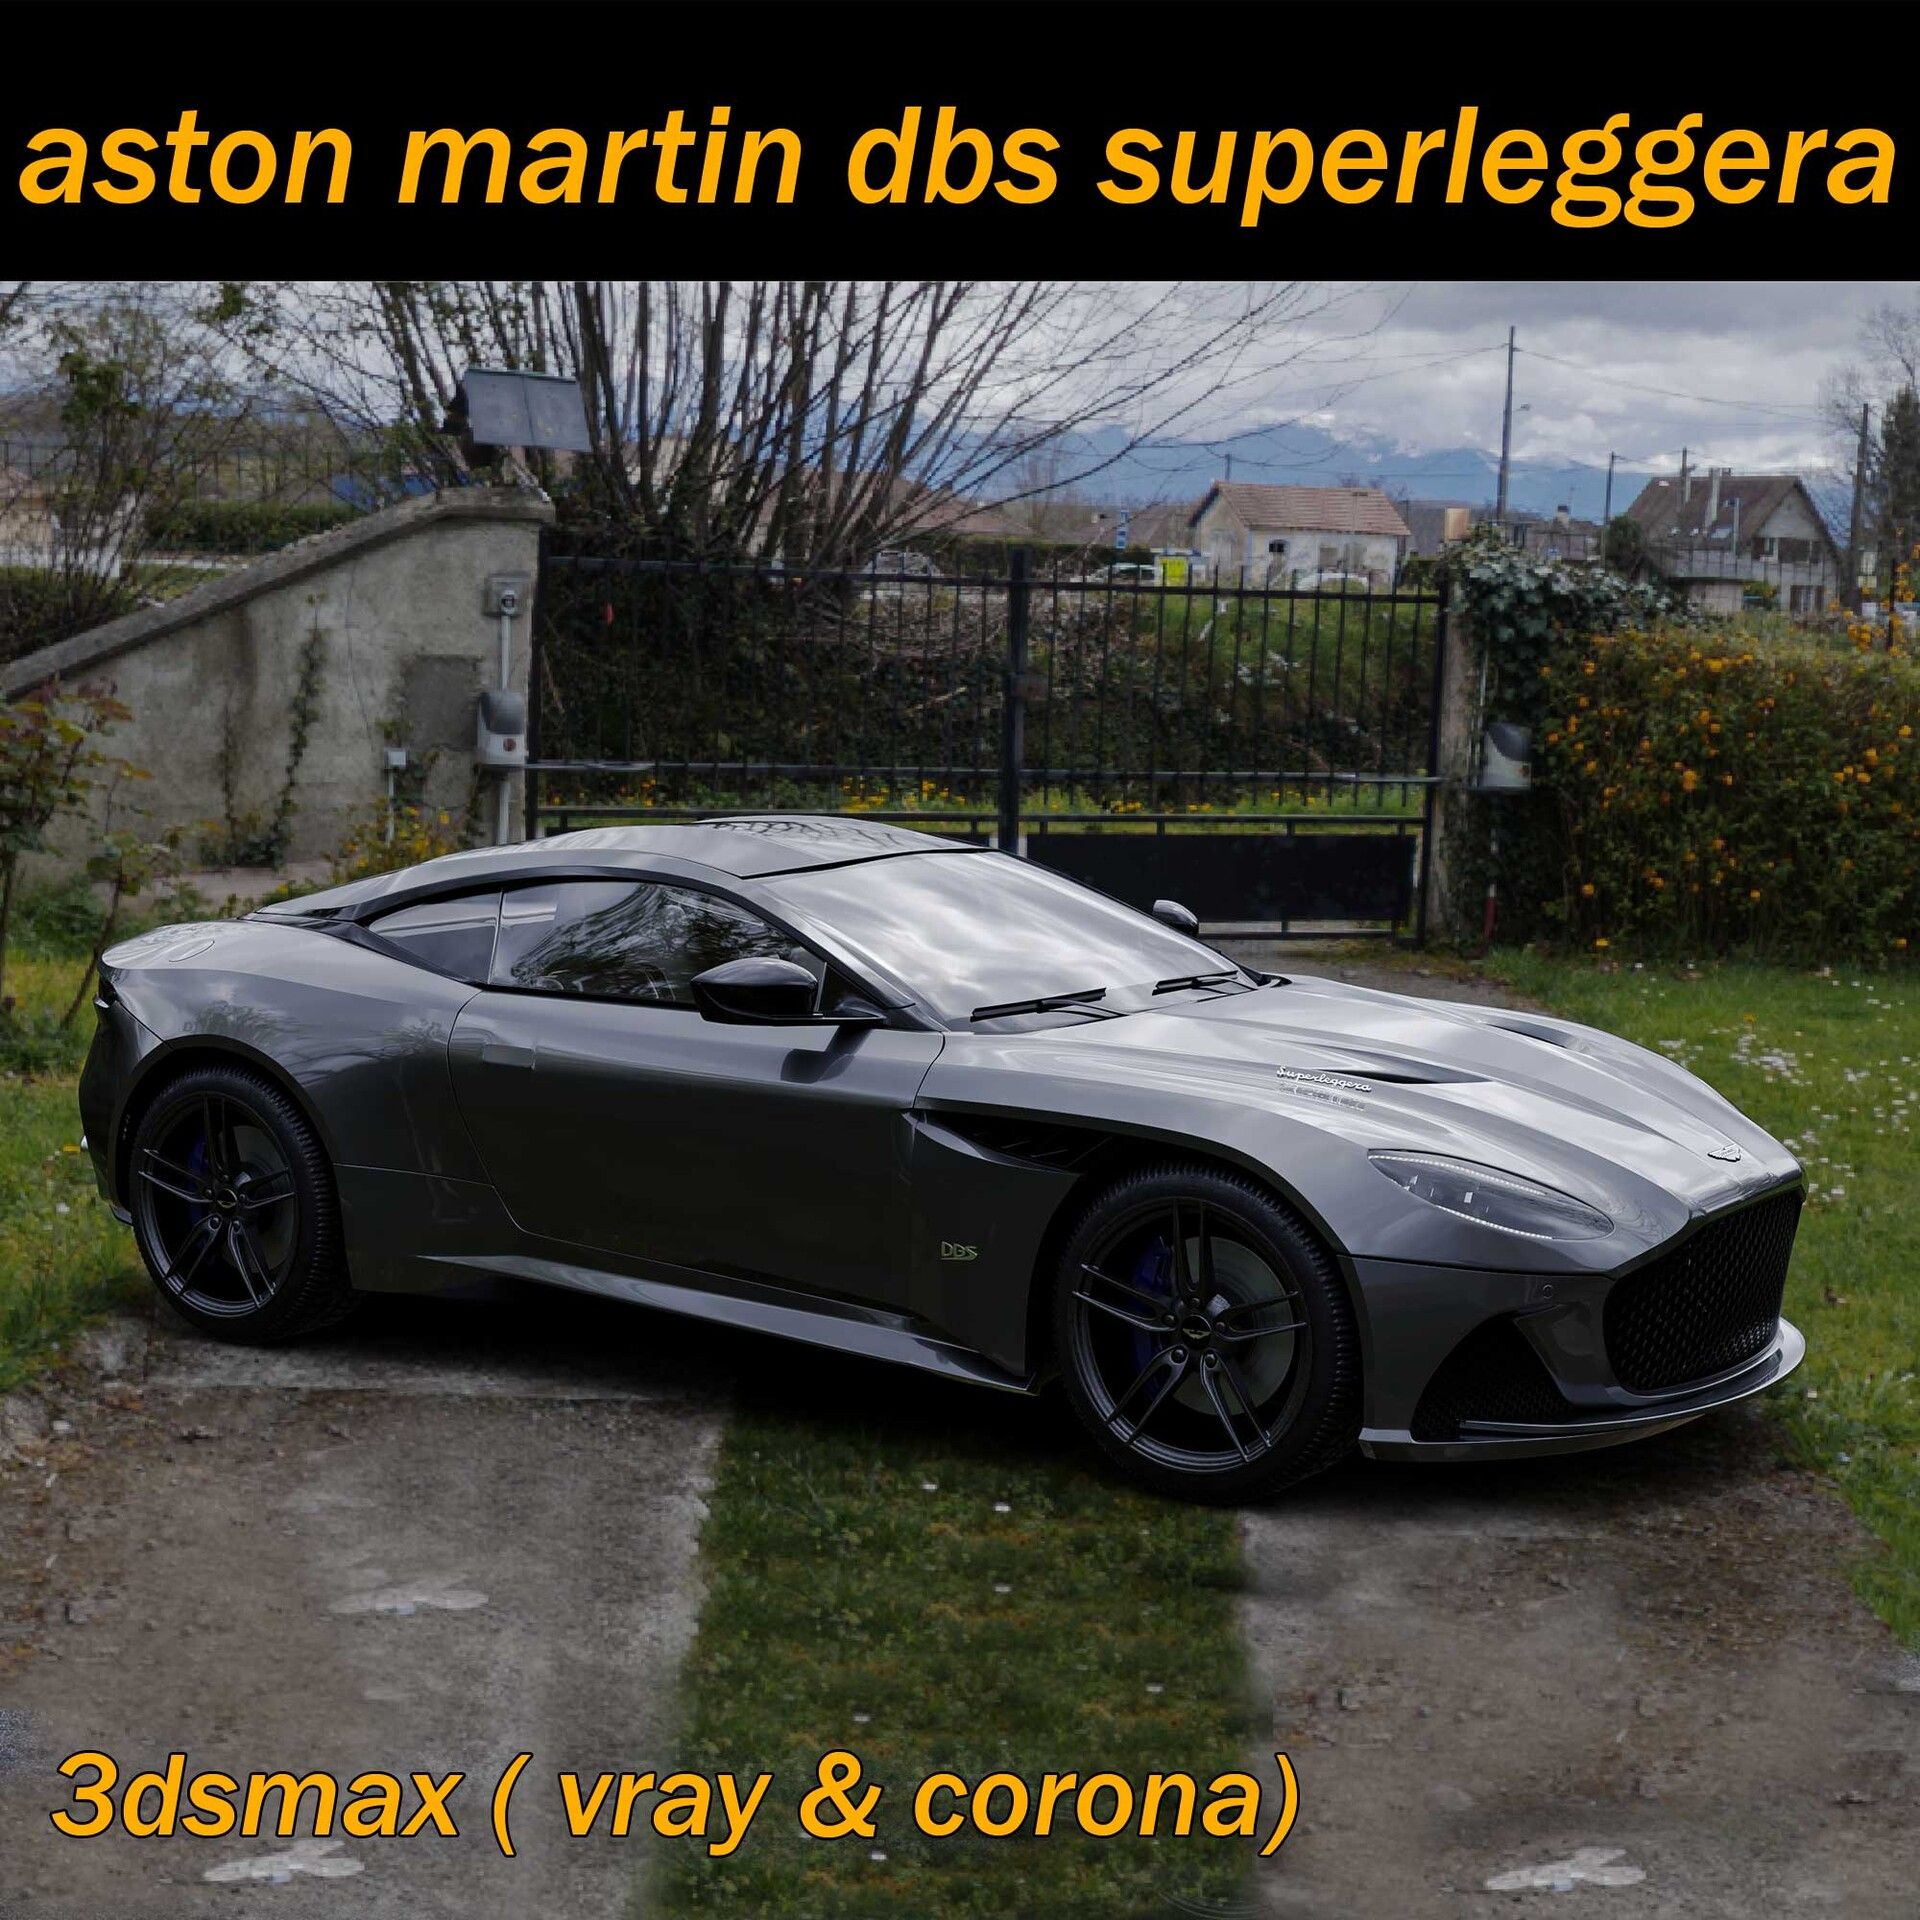 Aston Martin Dbs superleggera | Aston martin, Superleggera, Aston martin dbs